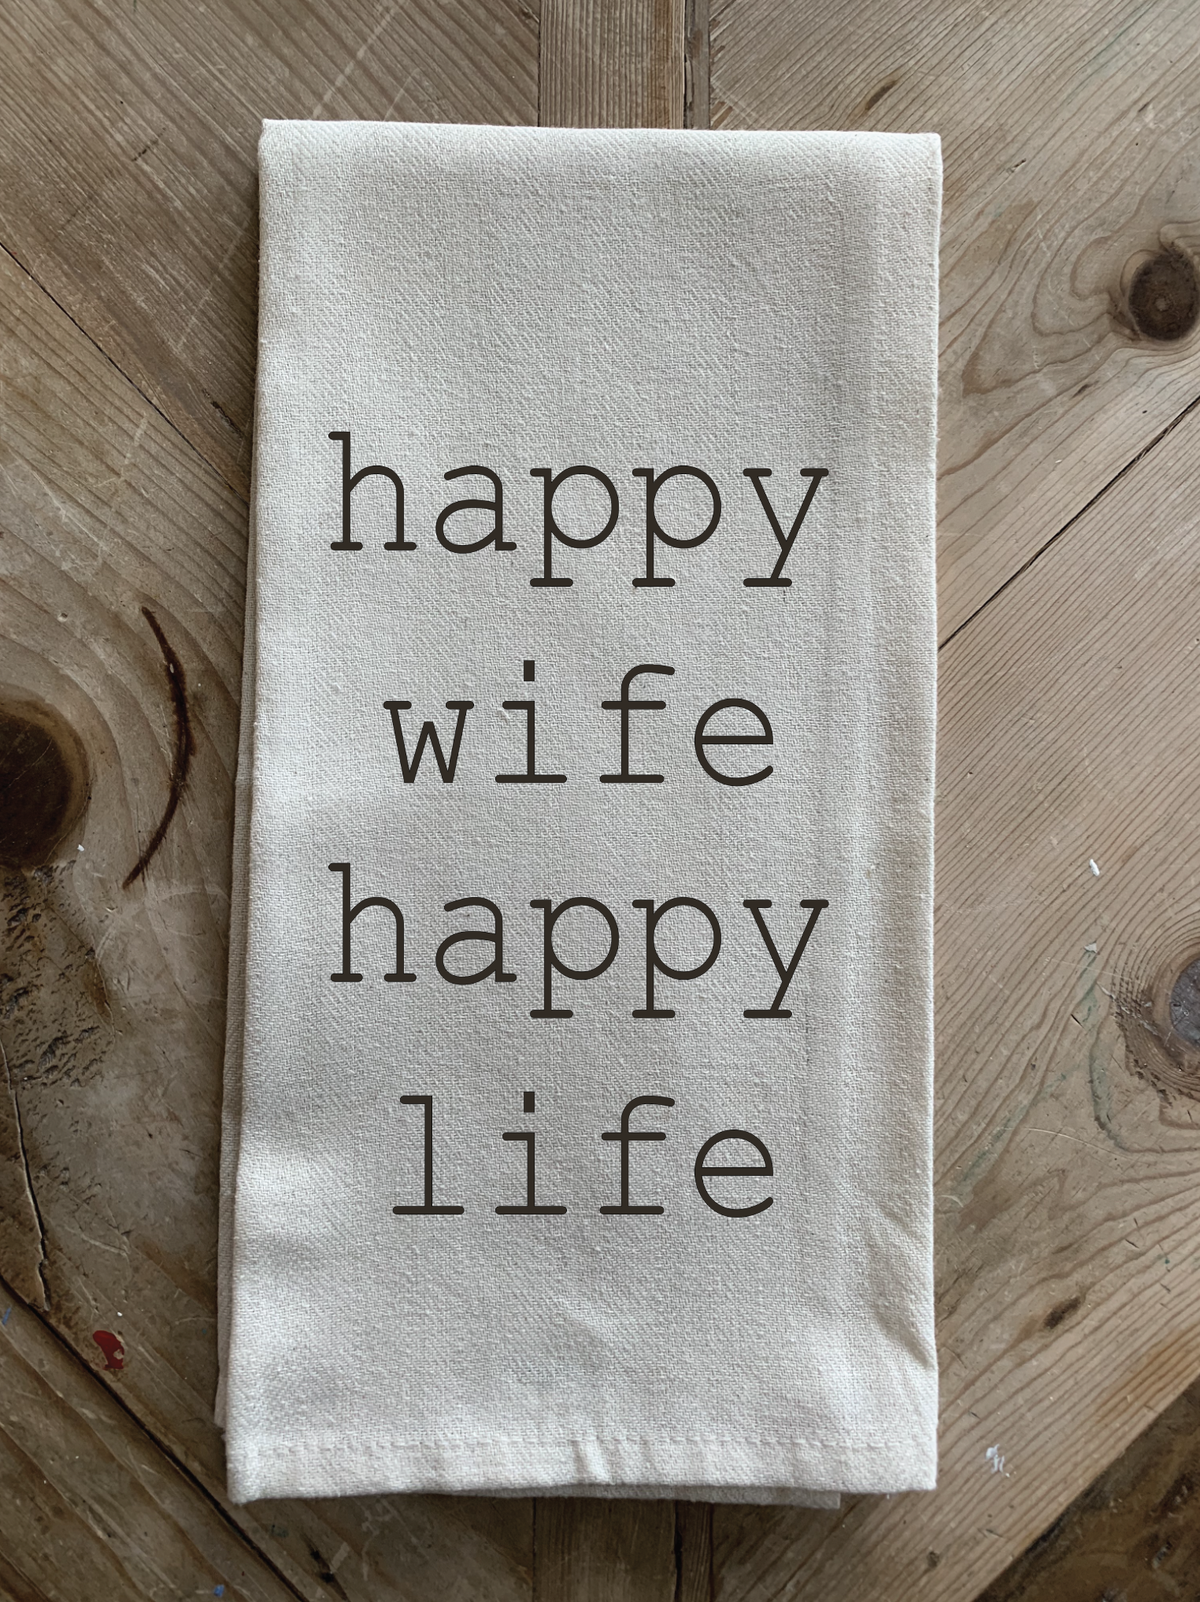 Happy wife, happy life.